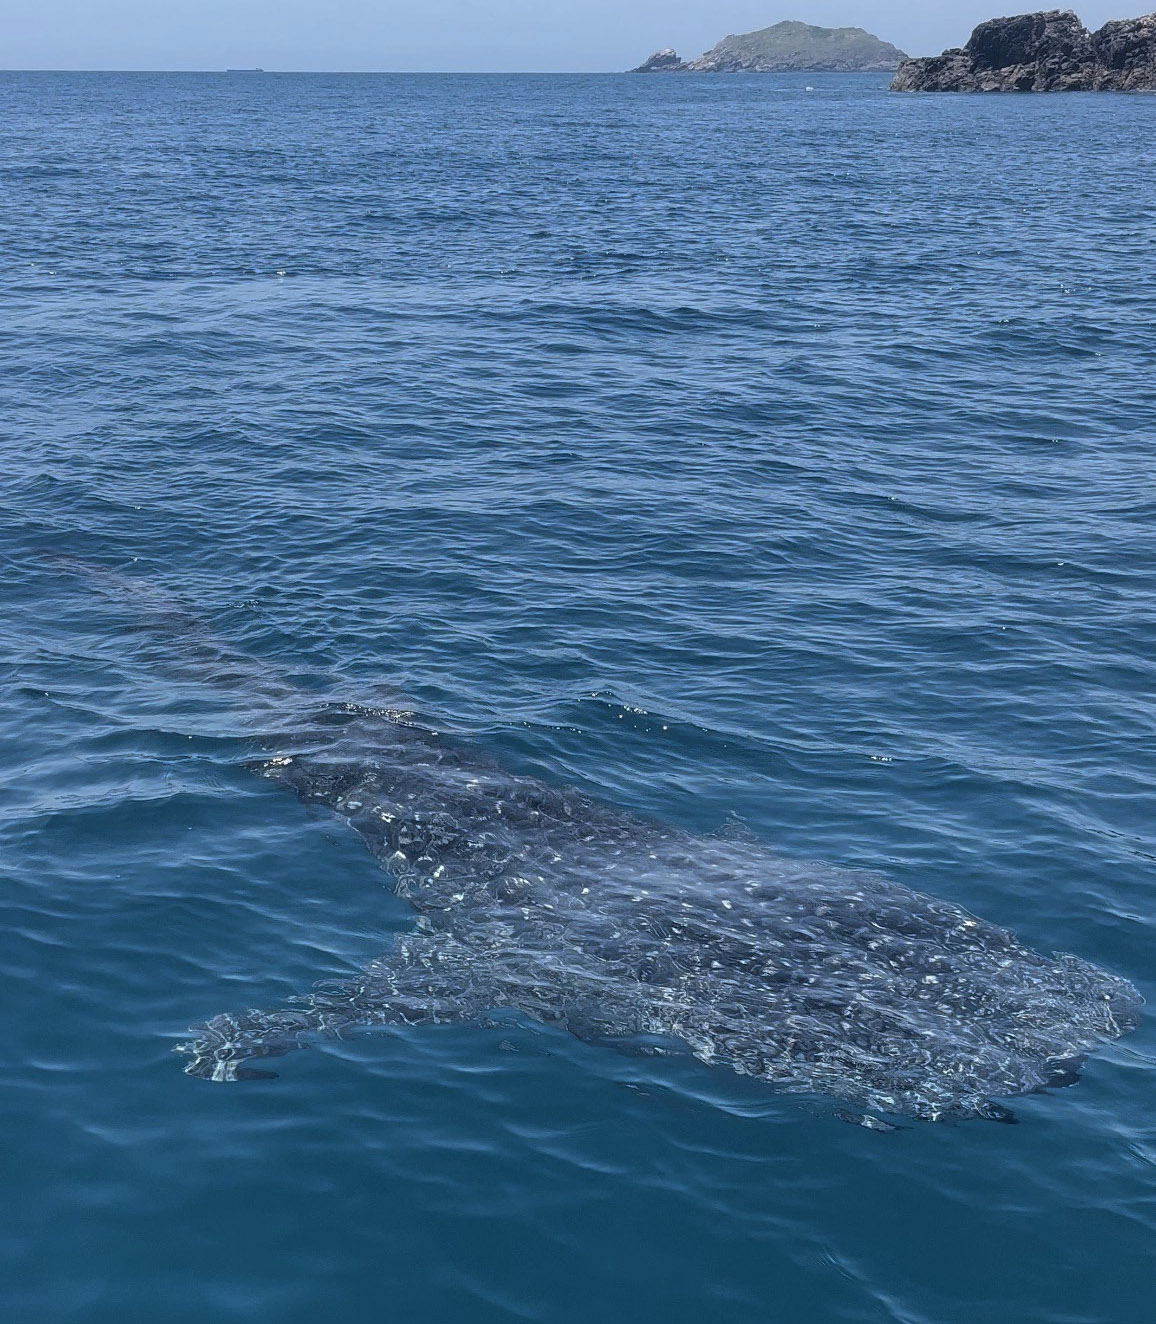 Cá mập khổng lồ xuất hiện và bơi sát tàu của du khách ở biển Kỳ Co - 1